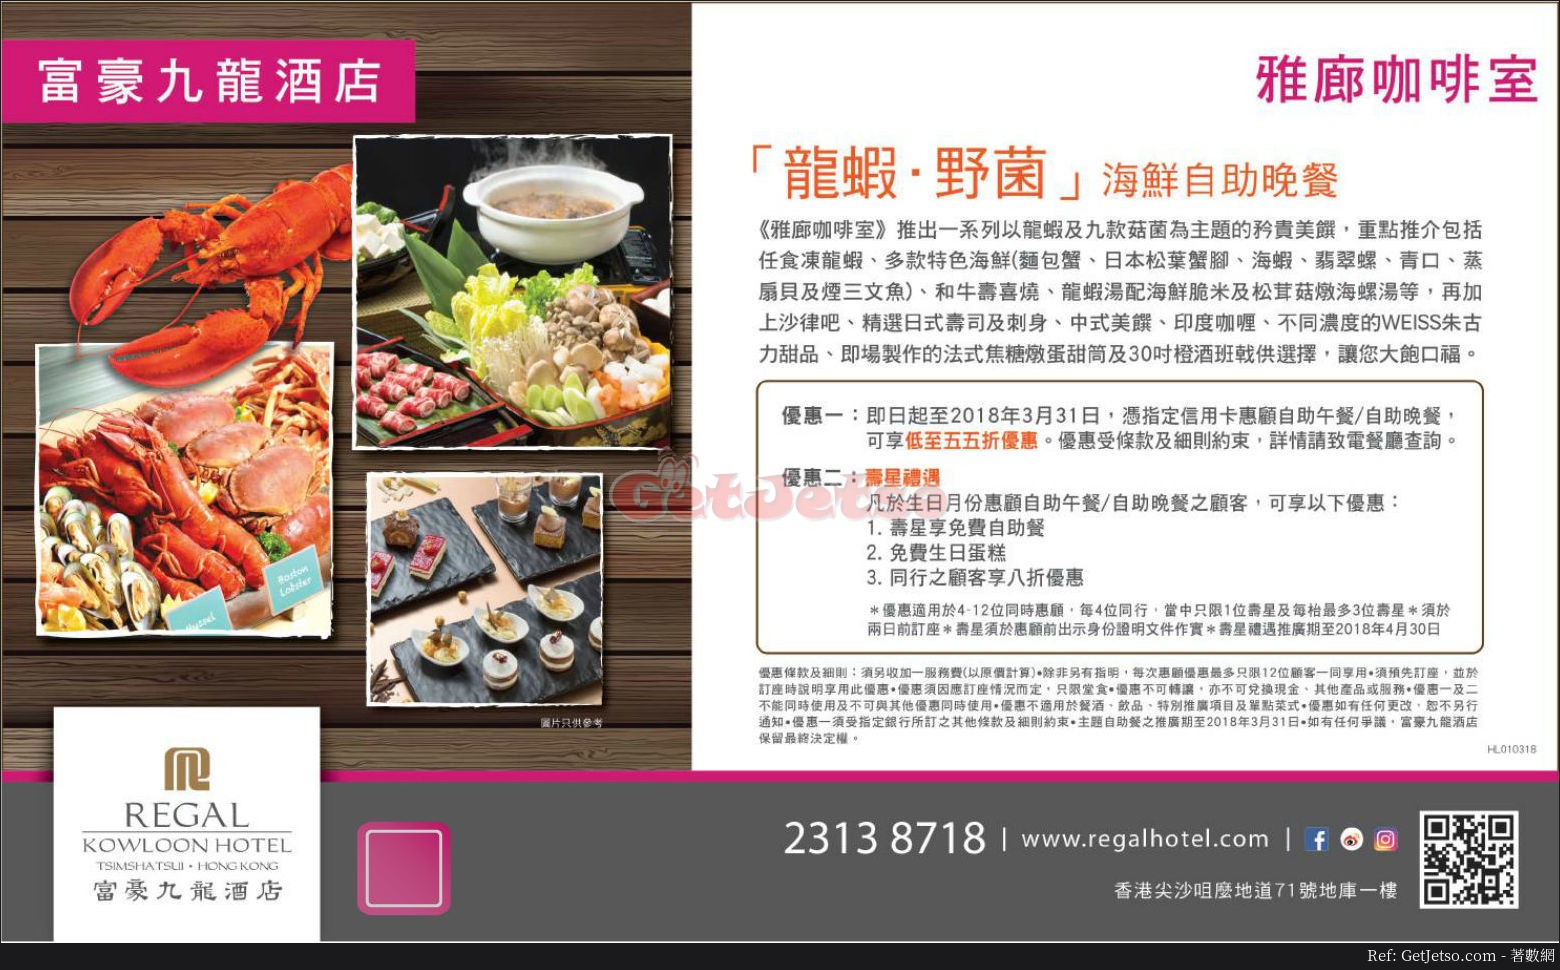 富豪九龍酒店低至55折自助餐優惠(至18年3月31日)圖片1